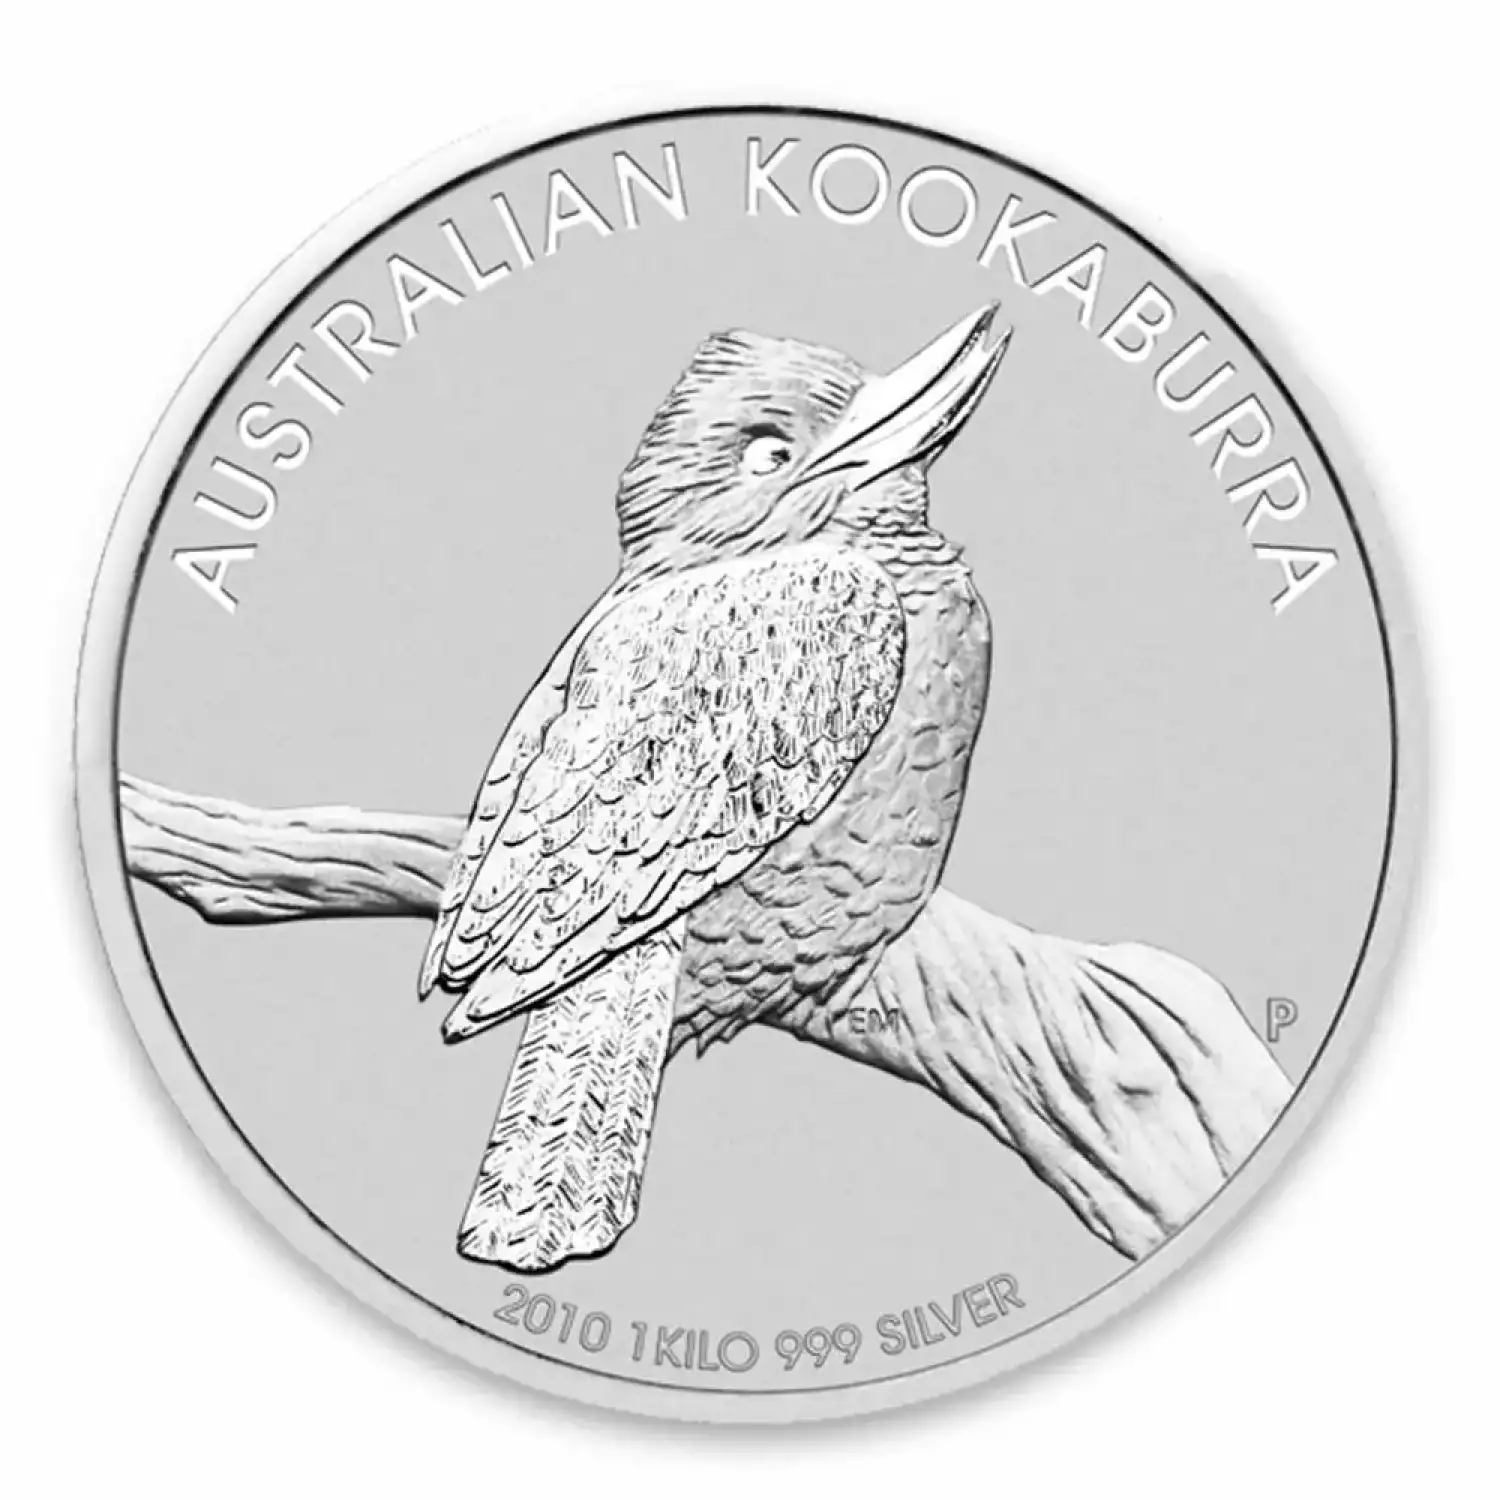 2010 1 kg Australian Perth Mint Silver Kookaburra (3)